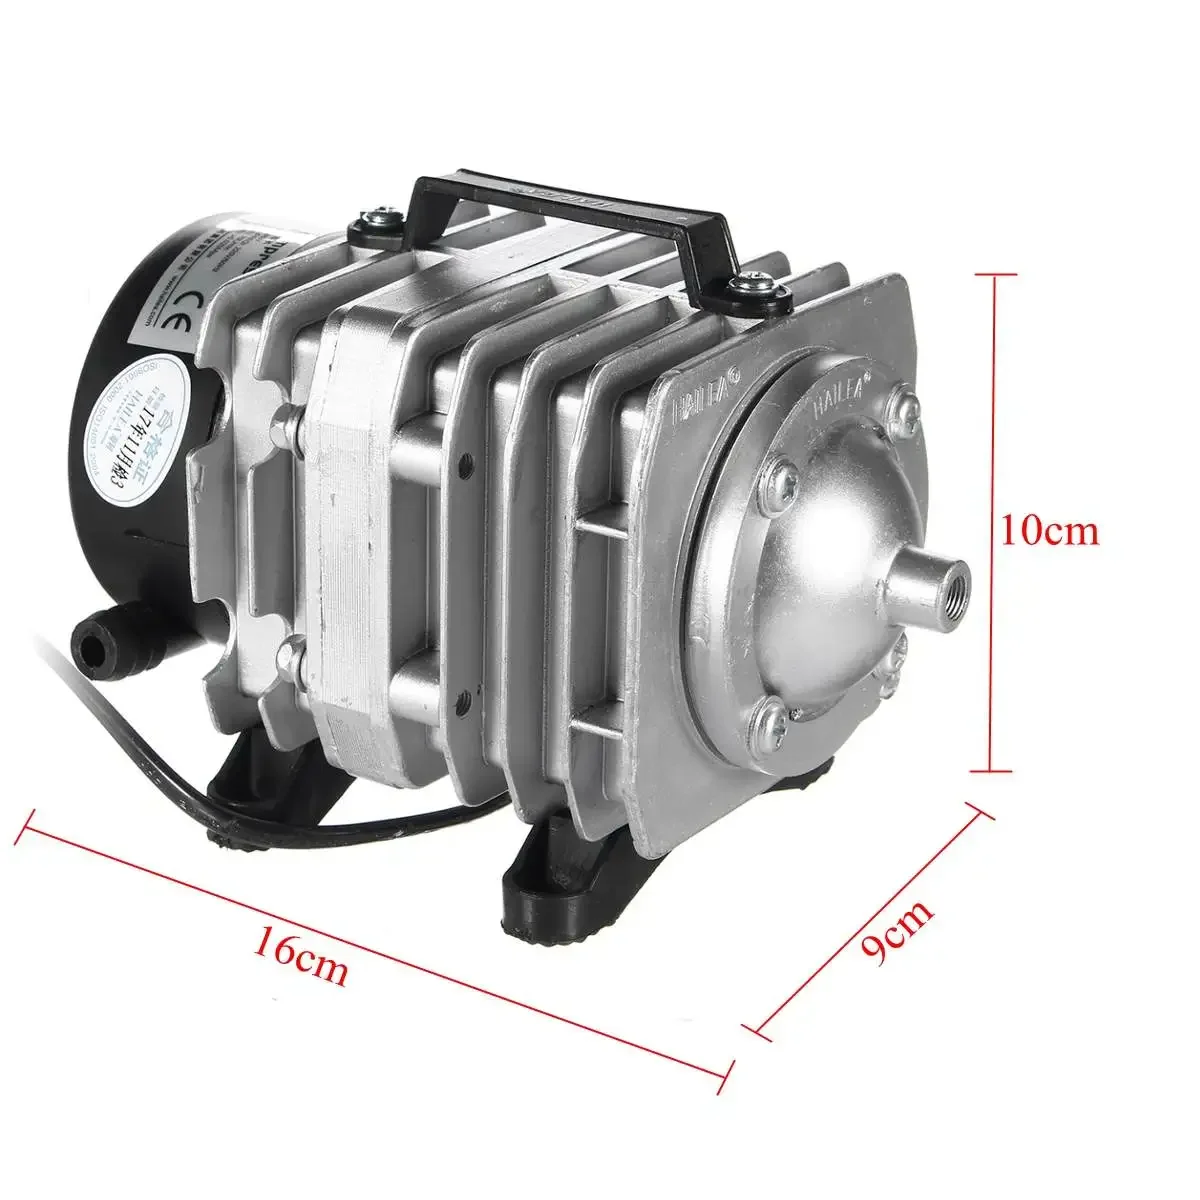 

45W 220V 70L/min Air Compressor Pump Electromagnetic Oxygen Aquarium Fish Pond Compressor Hydroponic Air Aerator ACO-318 Pump